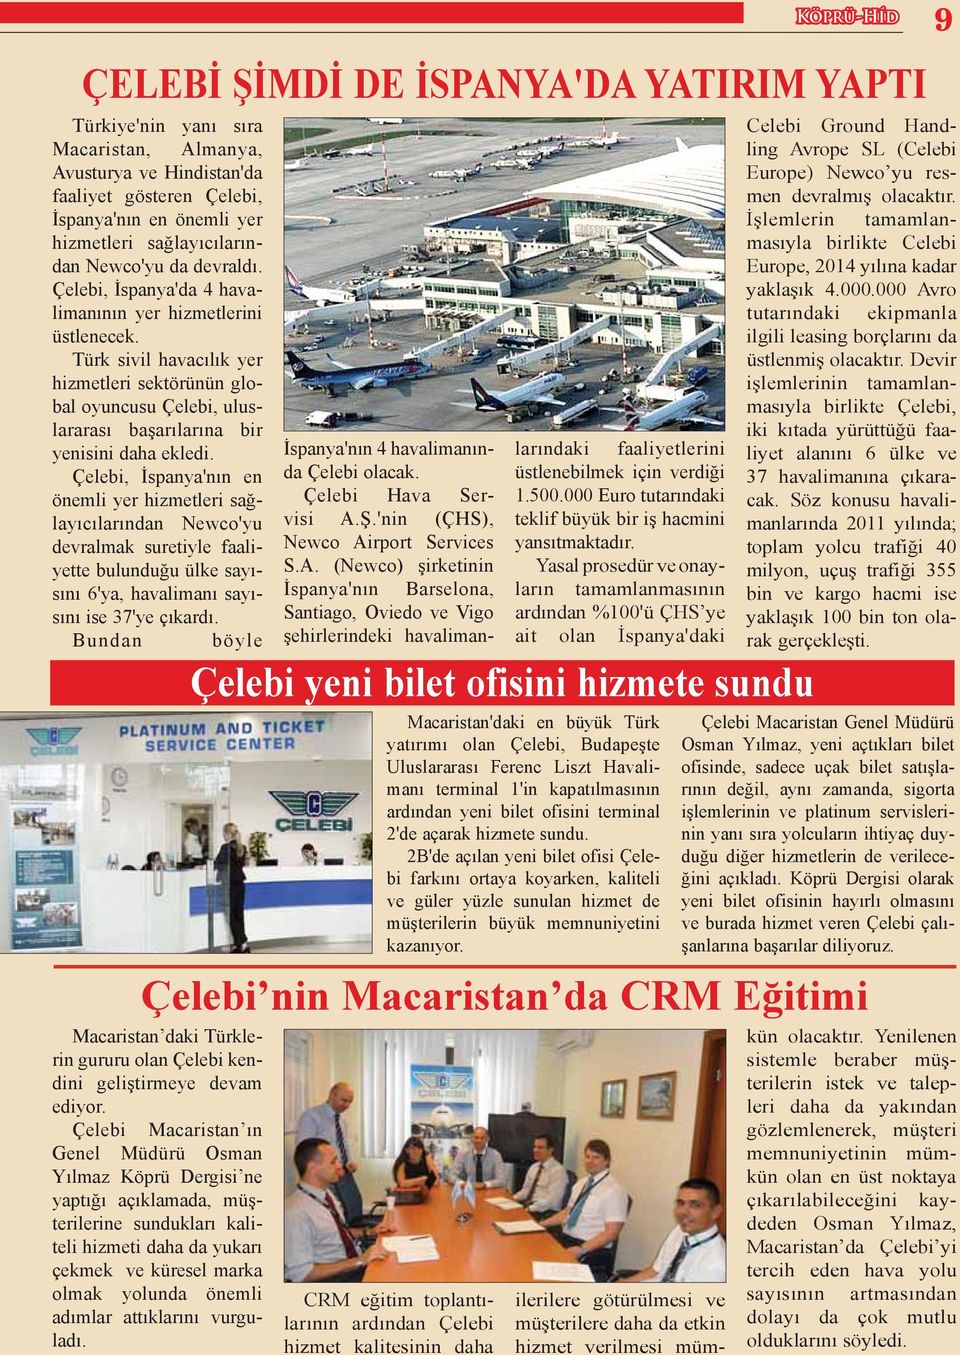 Türk sivil havacılık yer hizmetleri sektörünün global oyuncusu Çelebi, uluslararası başarılarına bir yenisini daha ekledi.